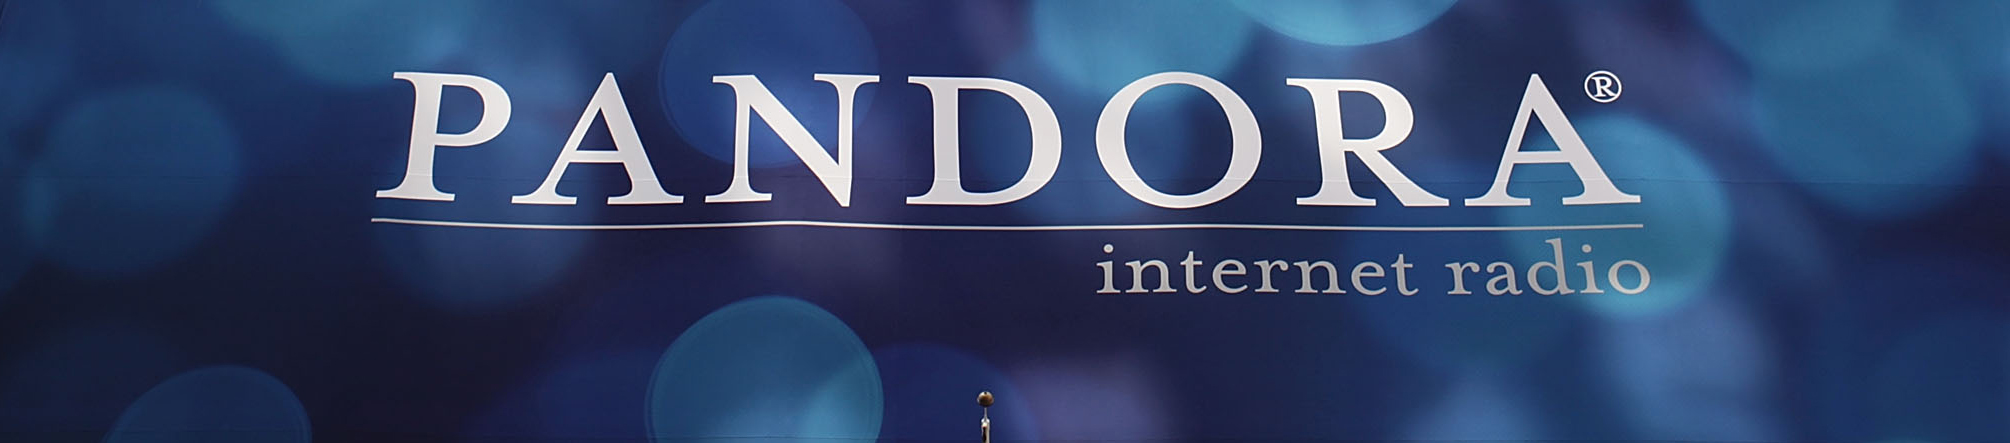 Pandora planning more global expansion